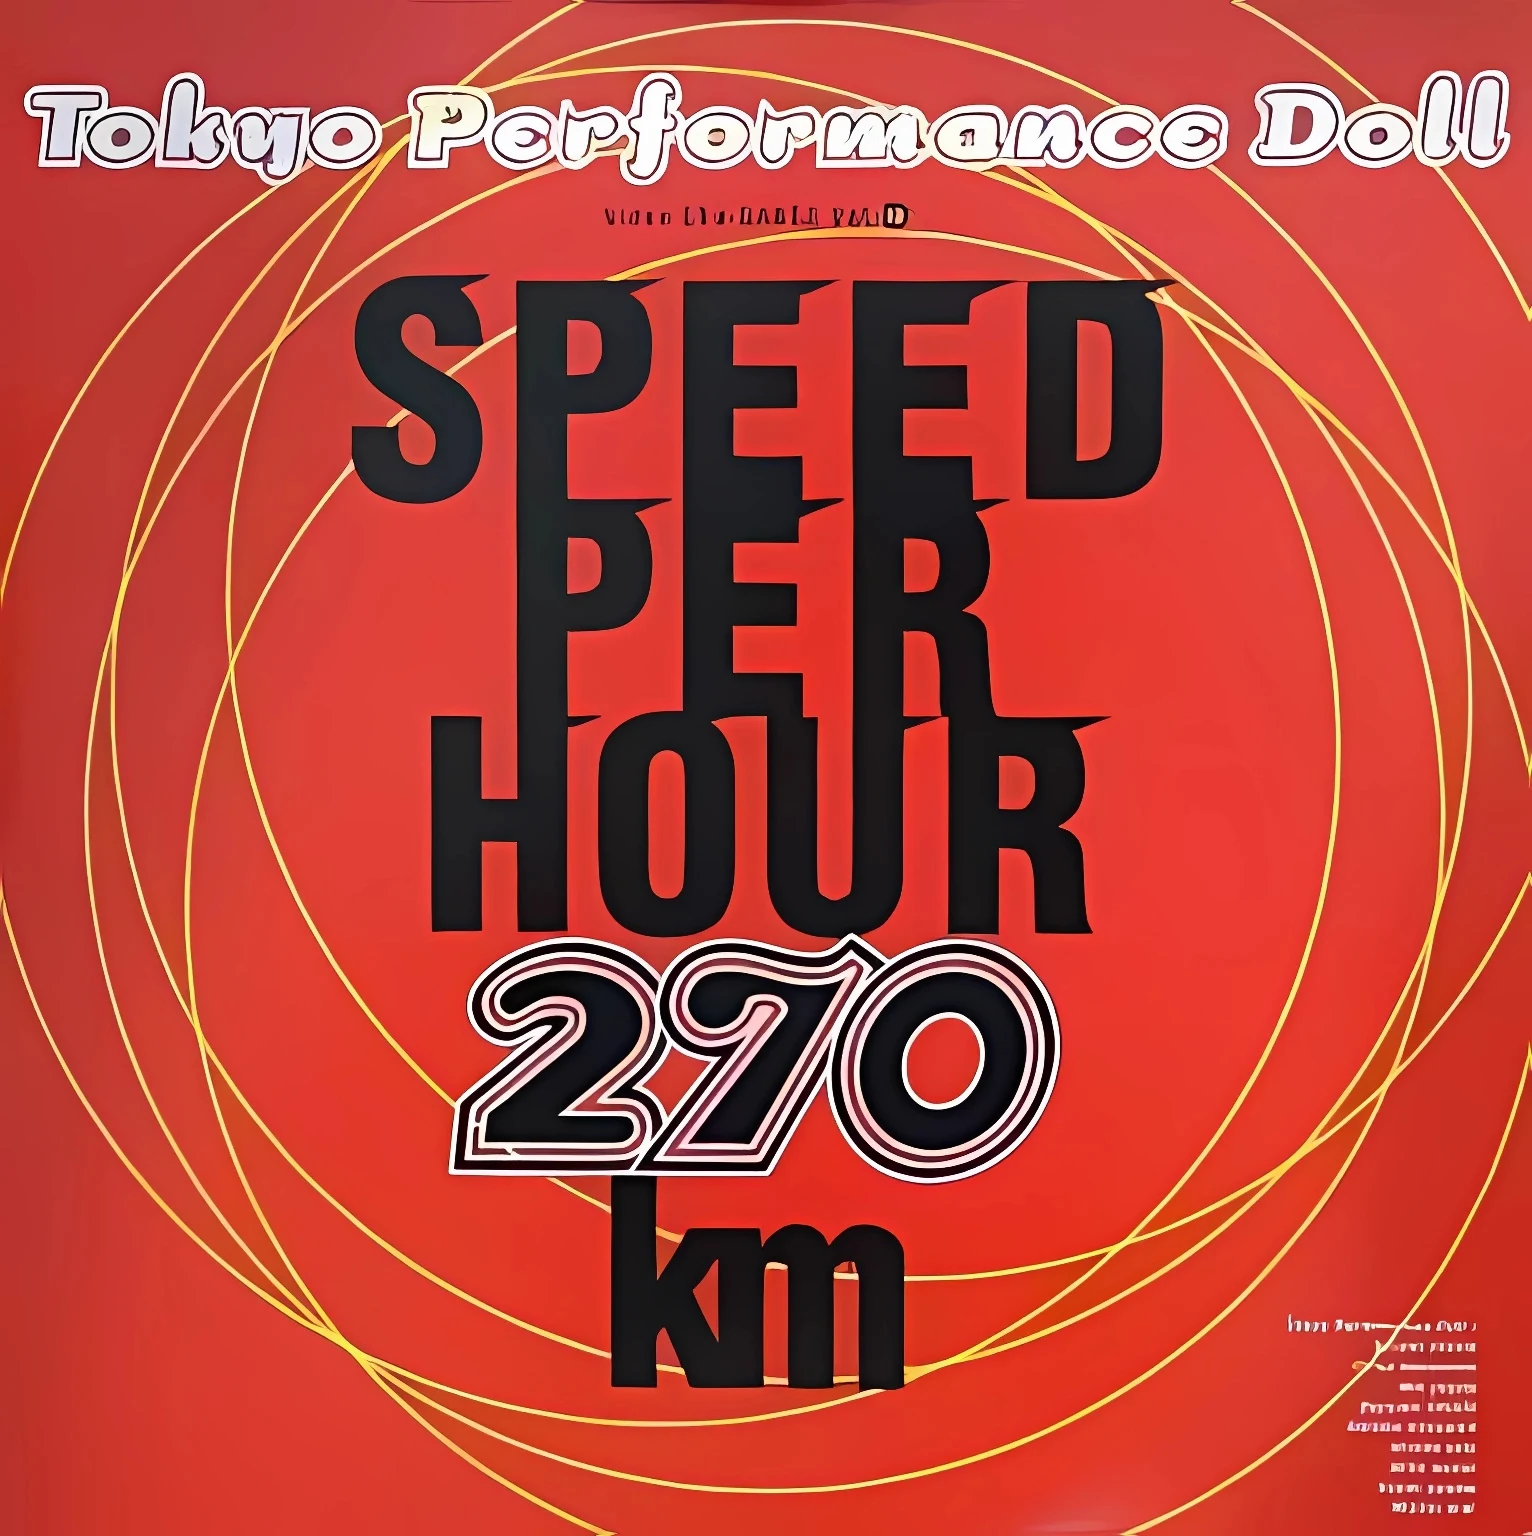 東京パフォーマンスドール - SPEED PER HOUR 270km VIDEO Cha-DANCE Vol.13